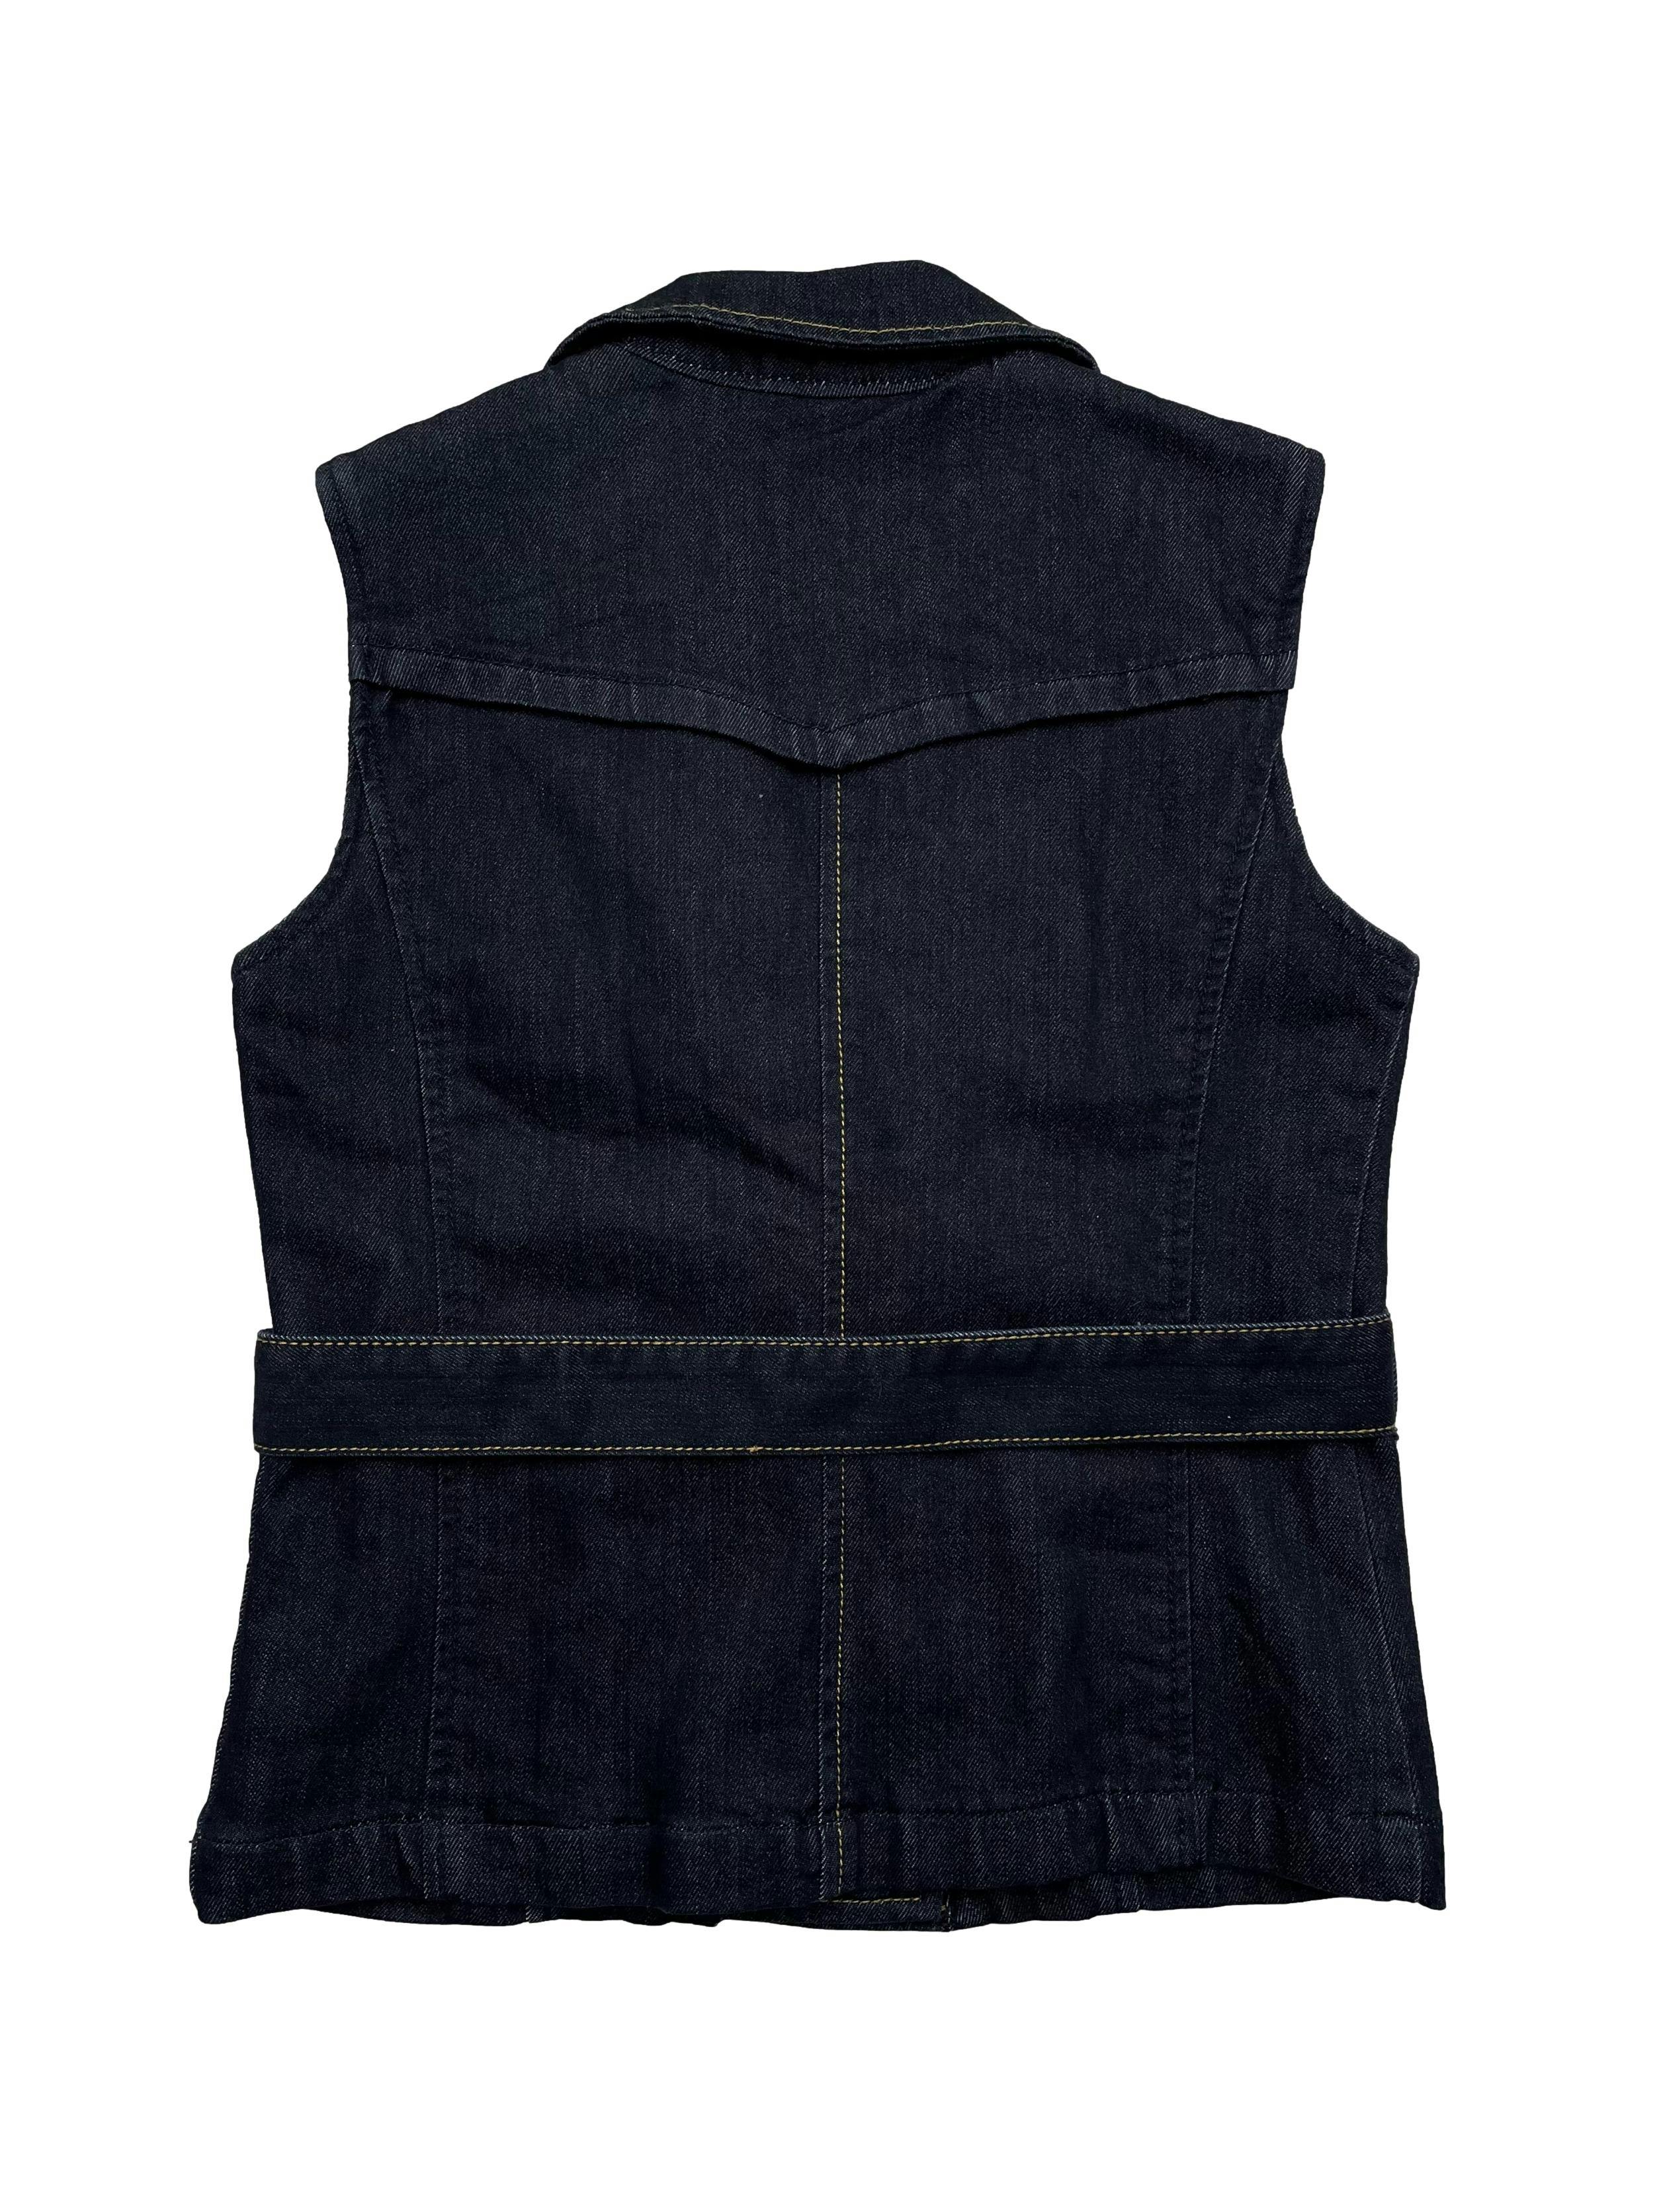 Chaleco de jean azul forrado con dobel fila de botones, bolsillos y cinto para amarrar. Busto 90cm., Largo 53cm